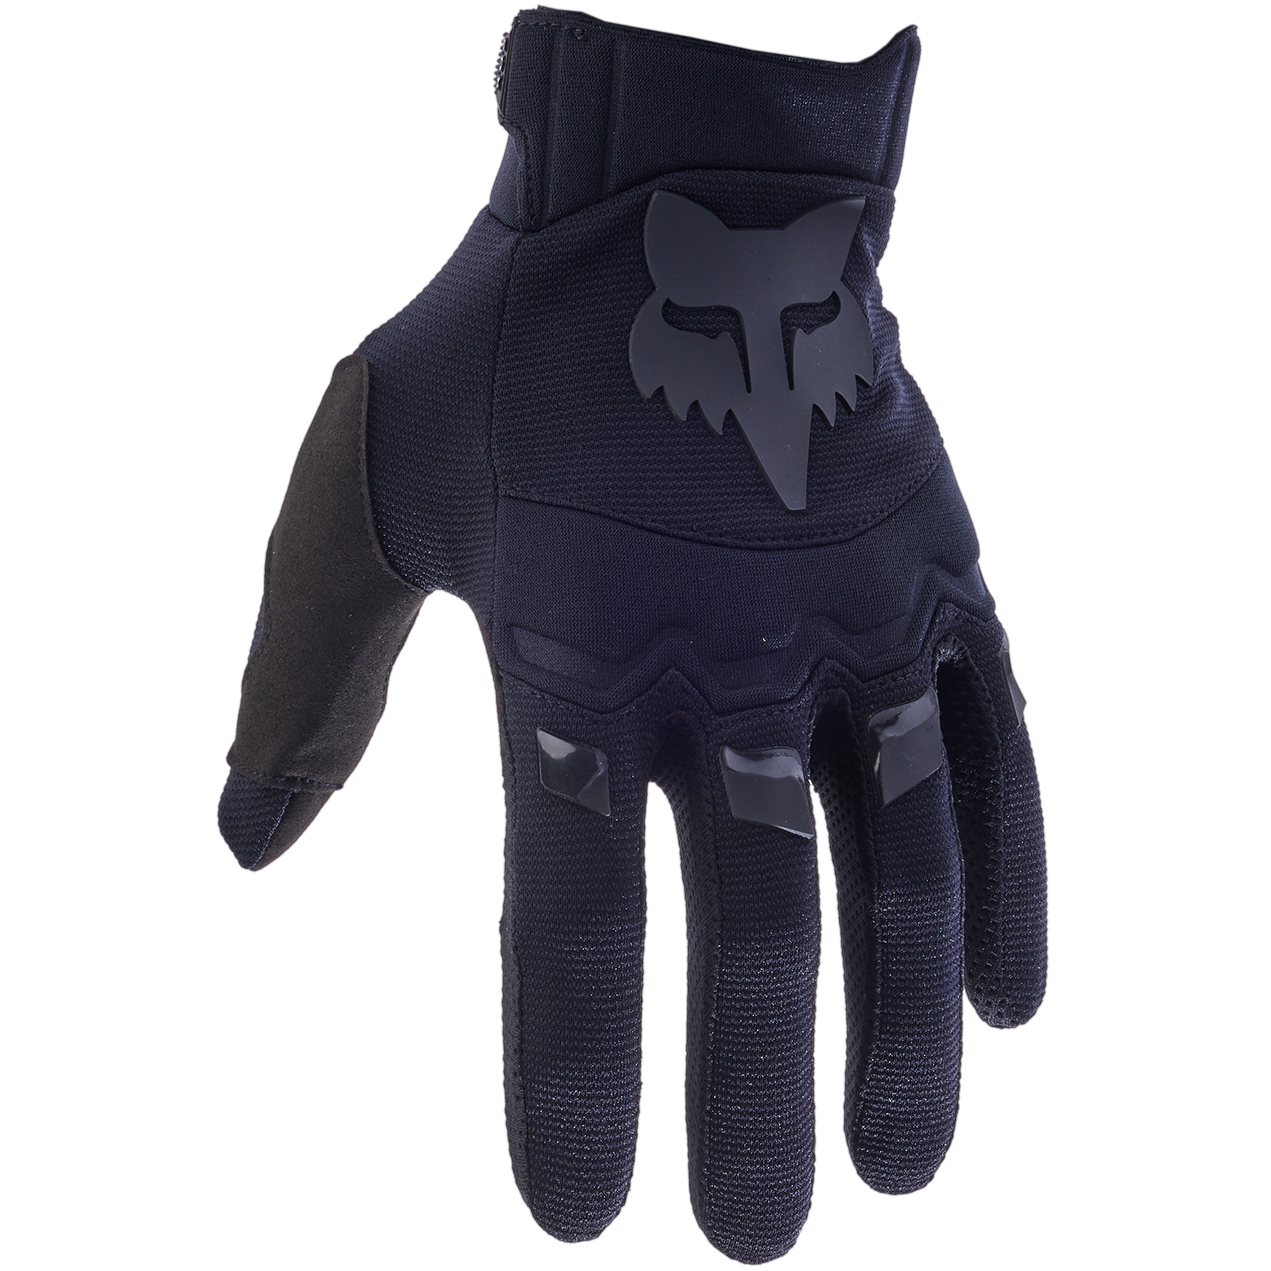 Produktbild von FOX Dirtpaw MTB Handschuhe - schwarz/schwarz